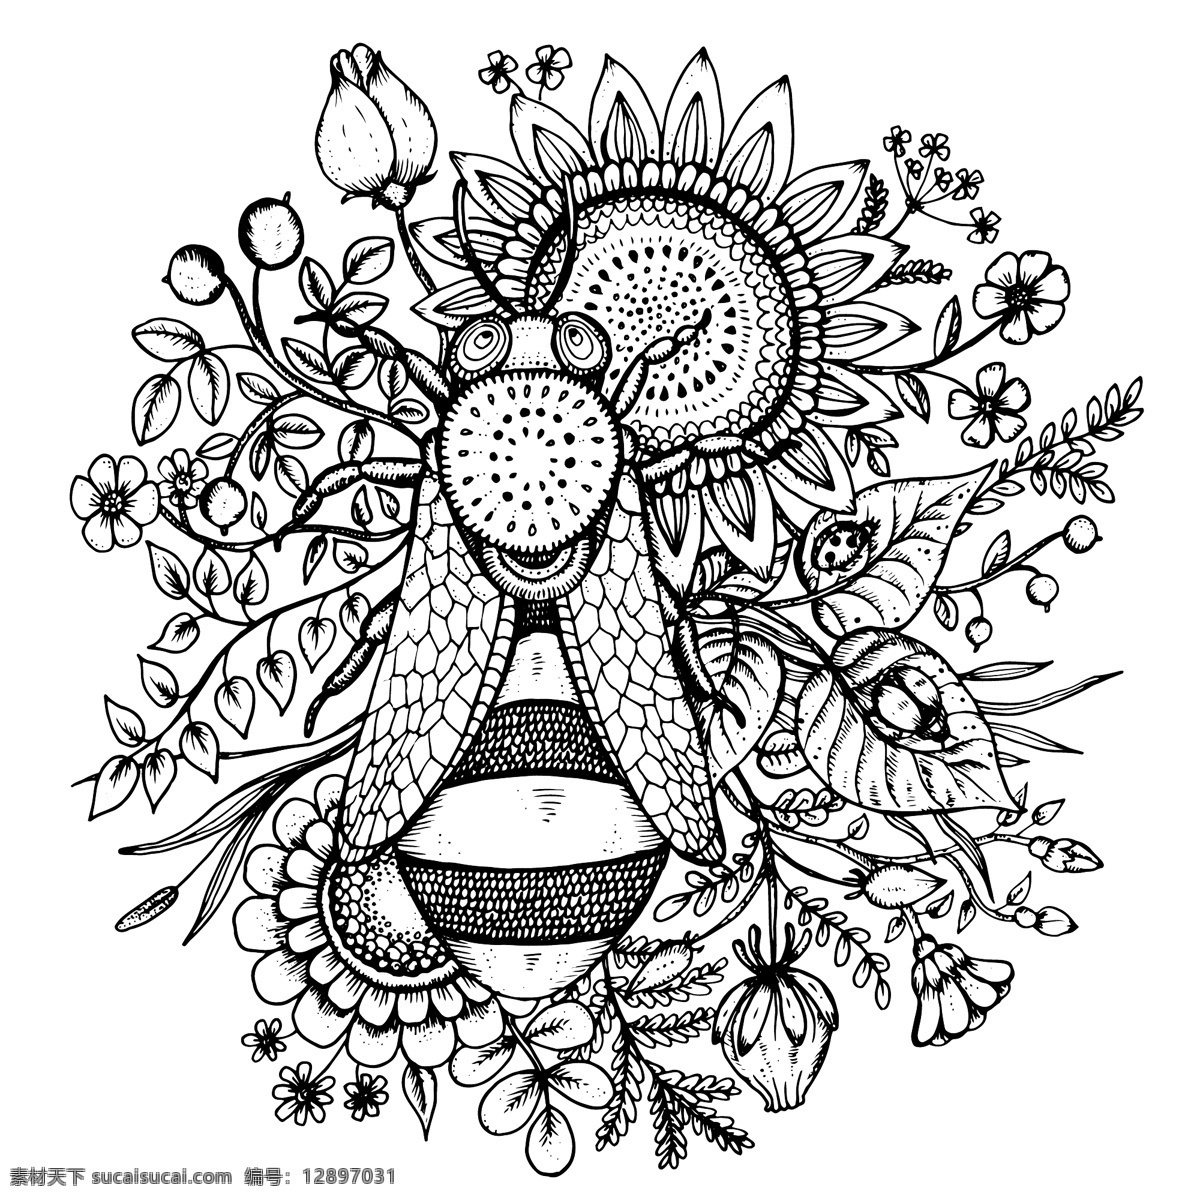 蜜蜂采蜜 手绘 蜜蜂 葵花 花卉 花朵 植物 花枝 叶子 瓢虫 装饰 卡片 插画 背景 海报 画册 矢量植物 生物世界 花草 平面素材